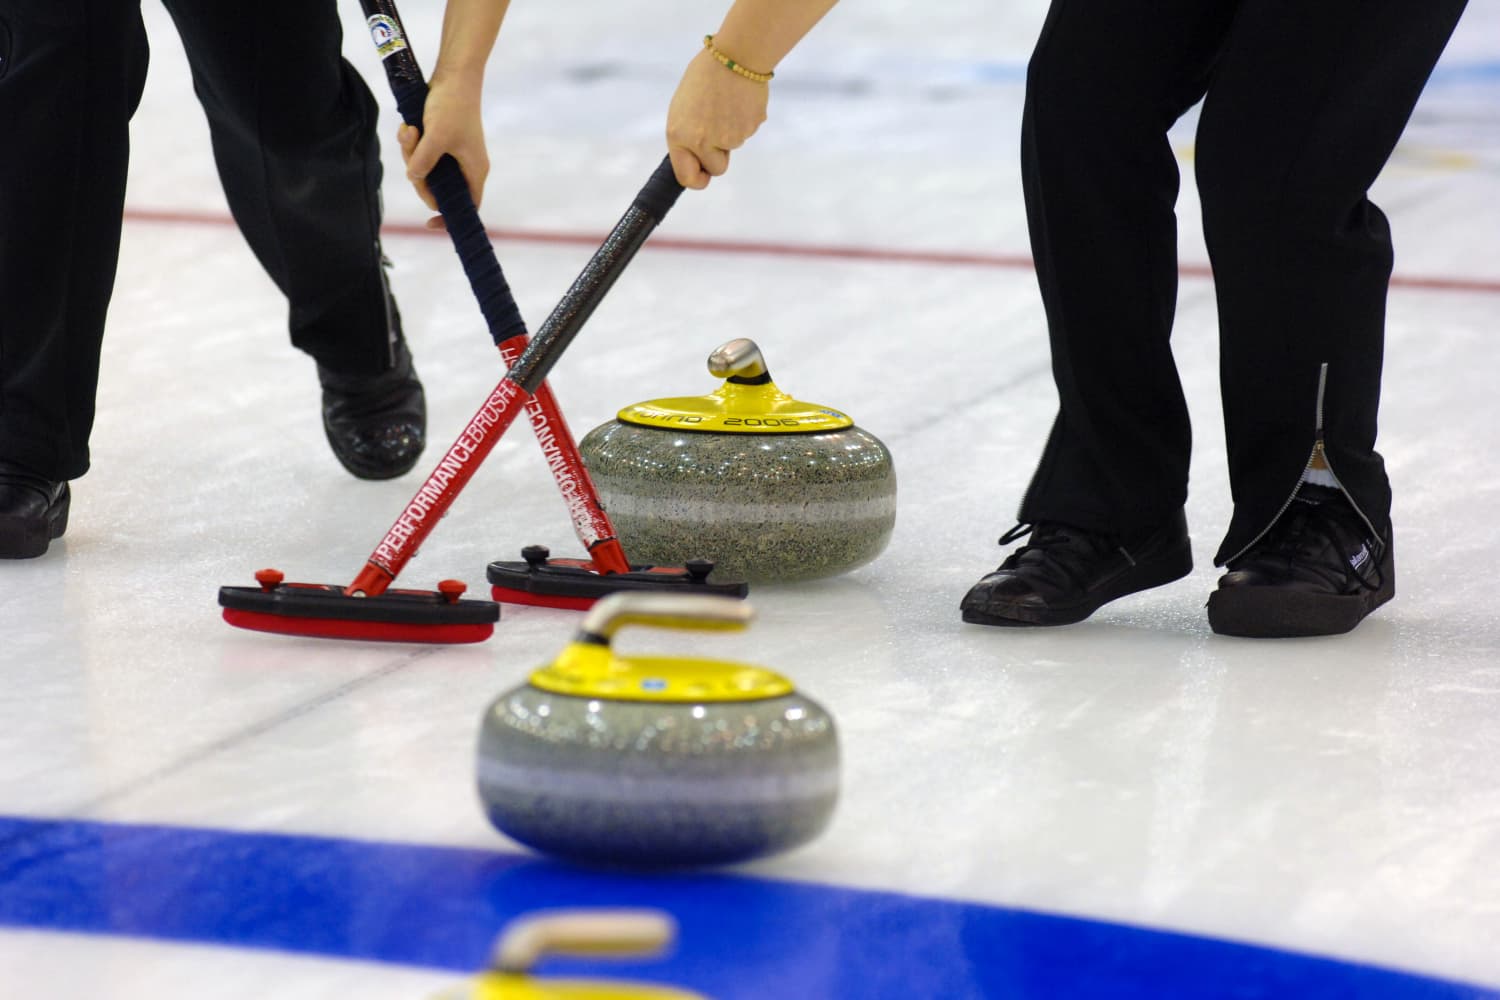 Mireu la gent recreació del curling olímpic amb productes de neteja en aquest divertit vídeo viral